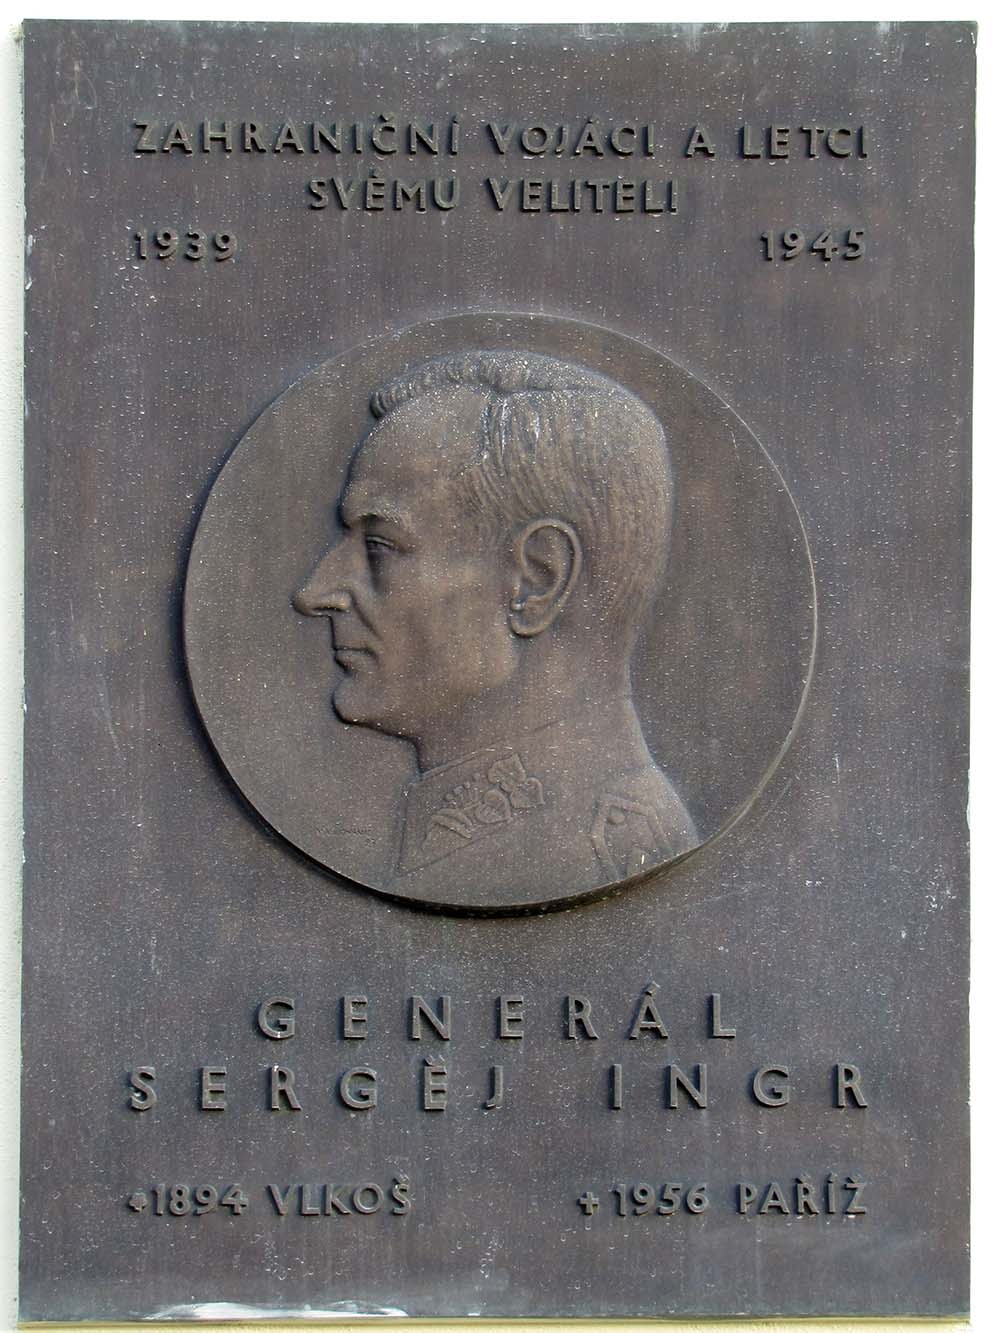 Memorial Sergej Ingr